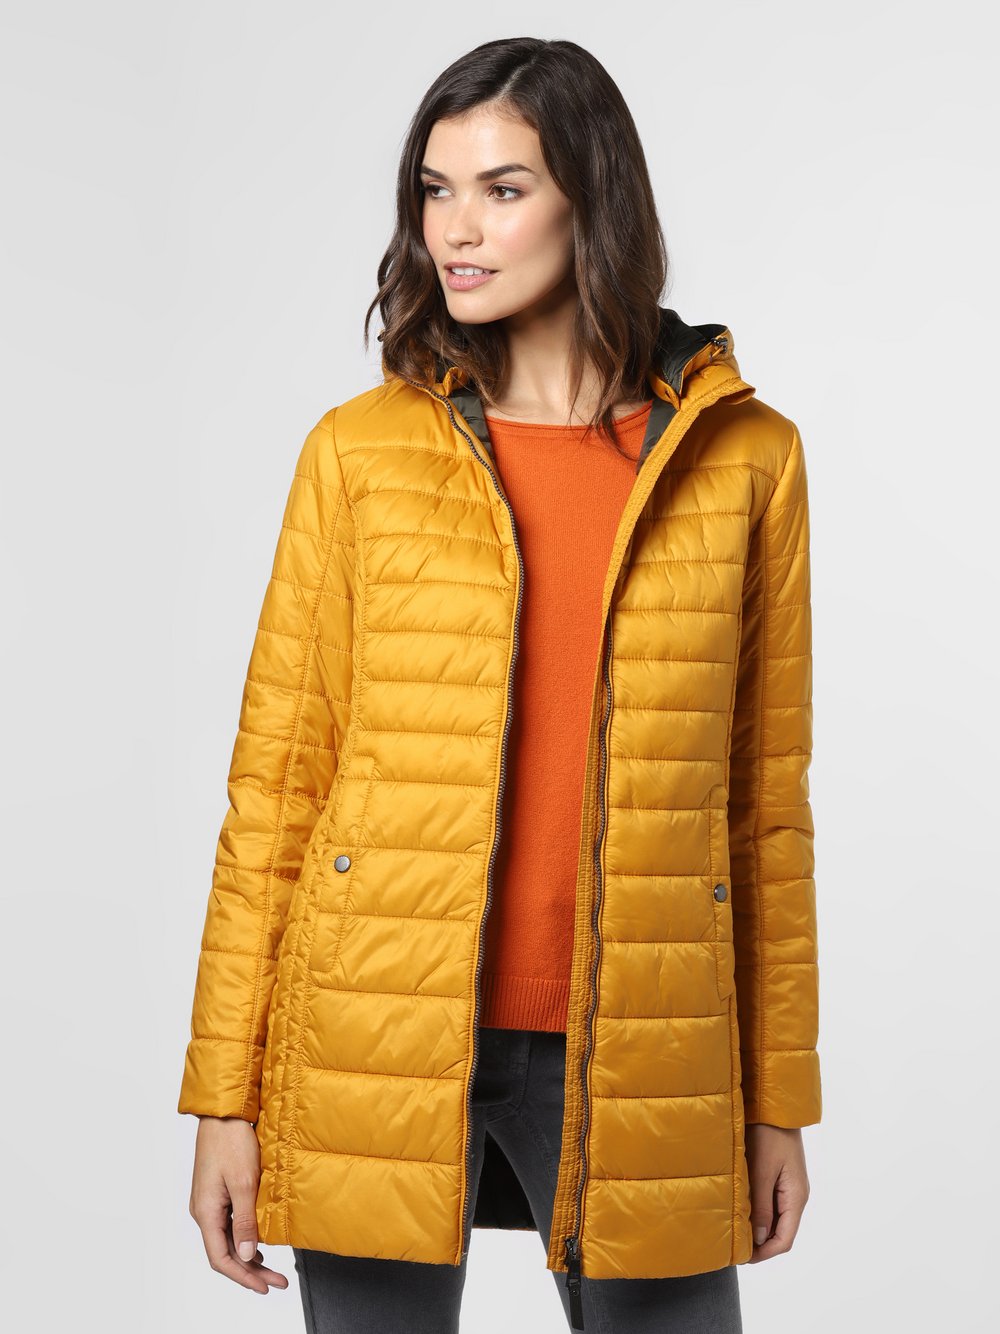 Franco Callegari - Damski płaszcz pikowany, żółty